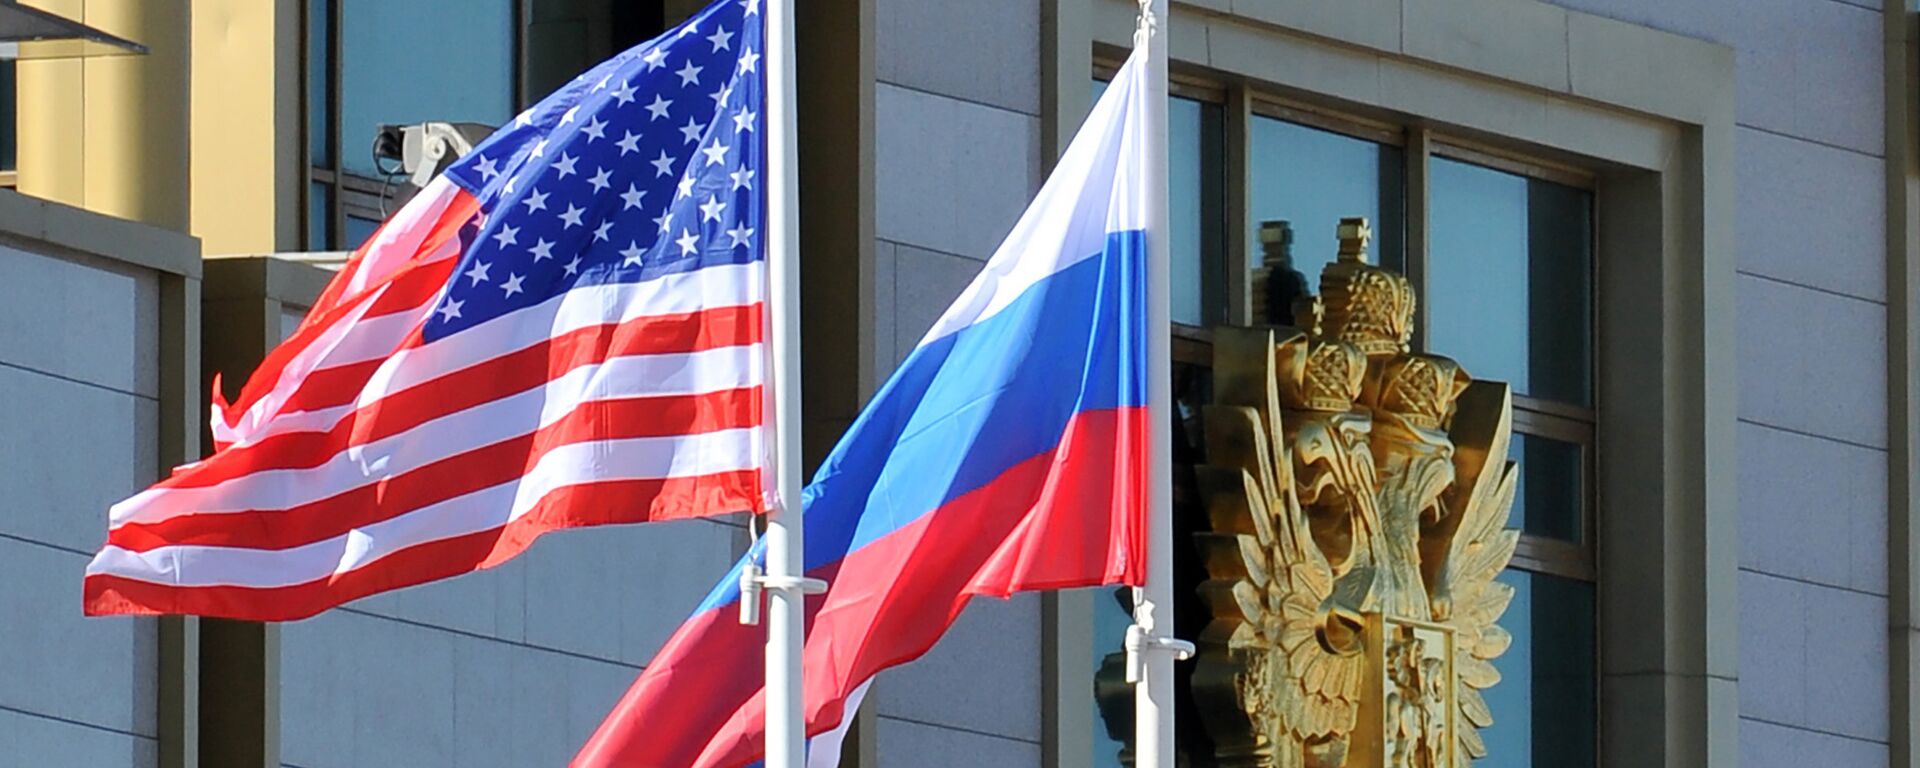 Banderas de EEUU y Rusia - Sputnik Mundo, 1920, 19.05.2021